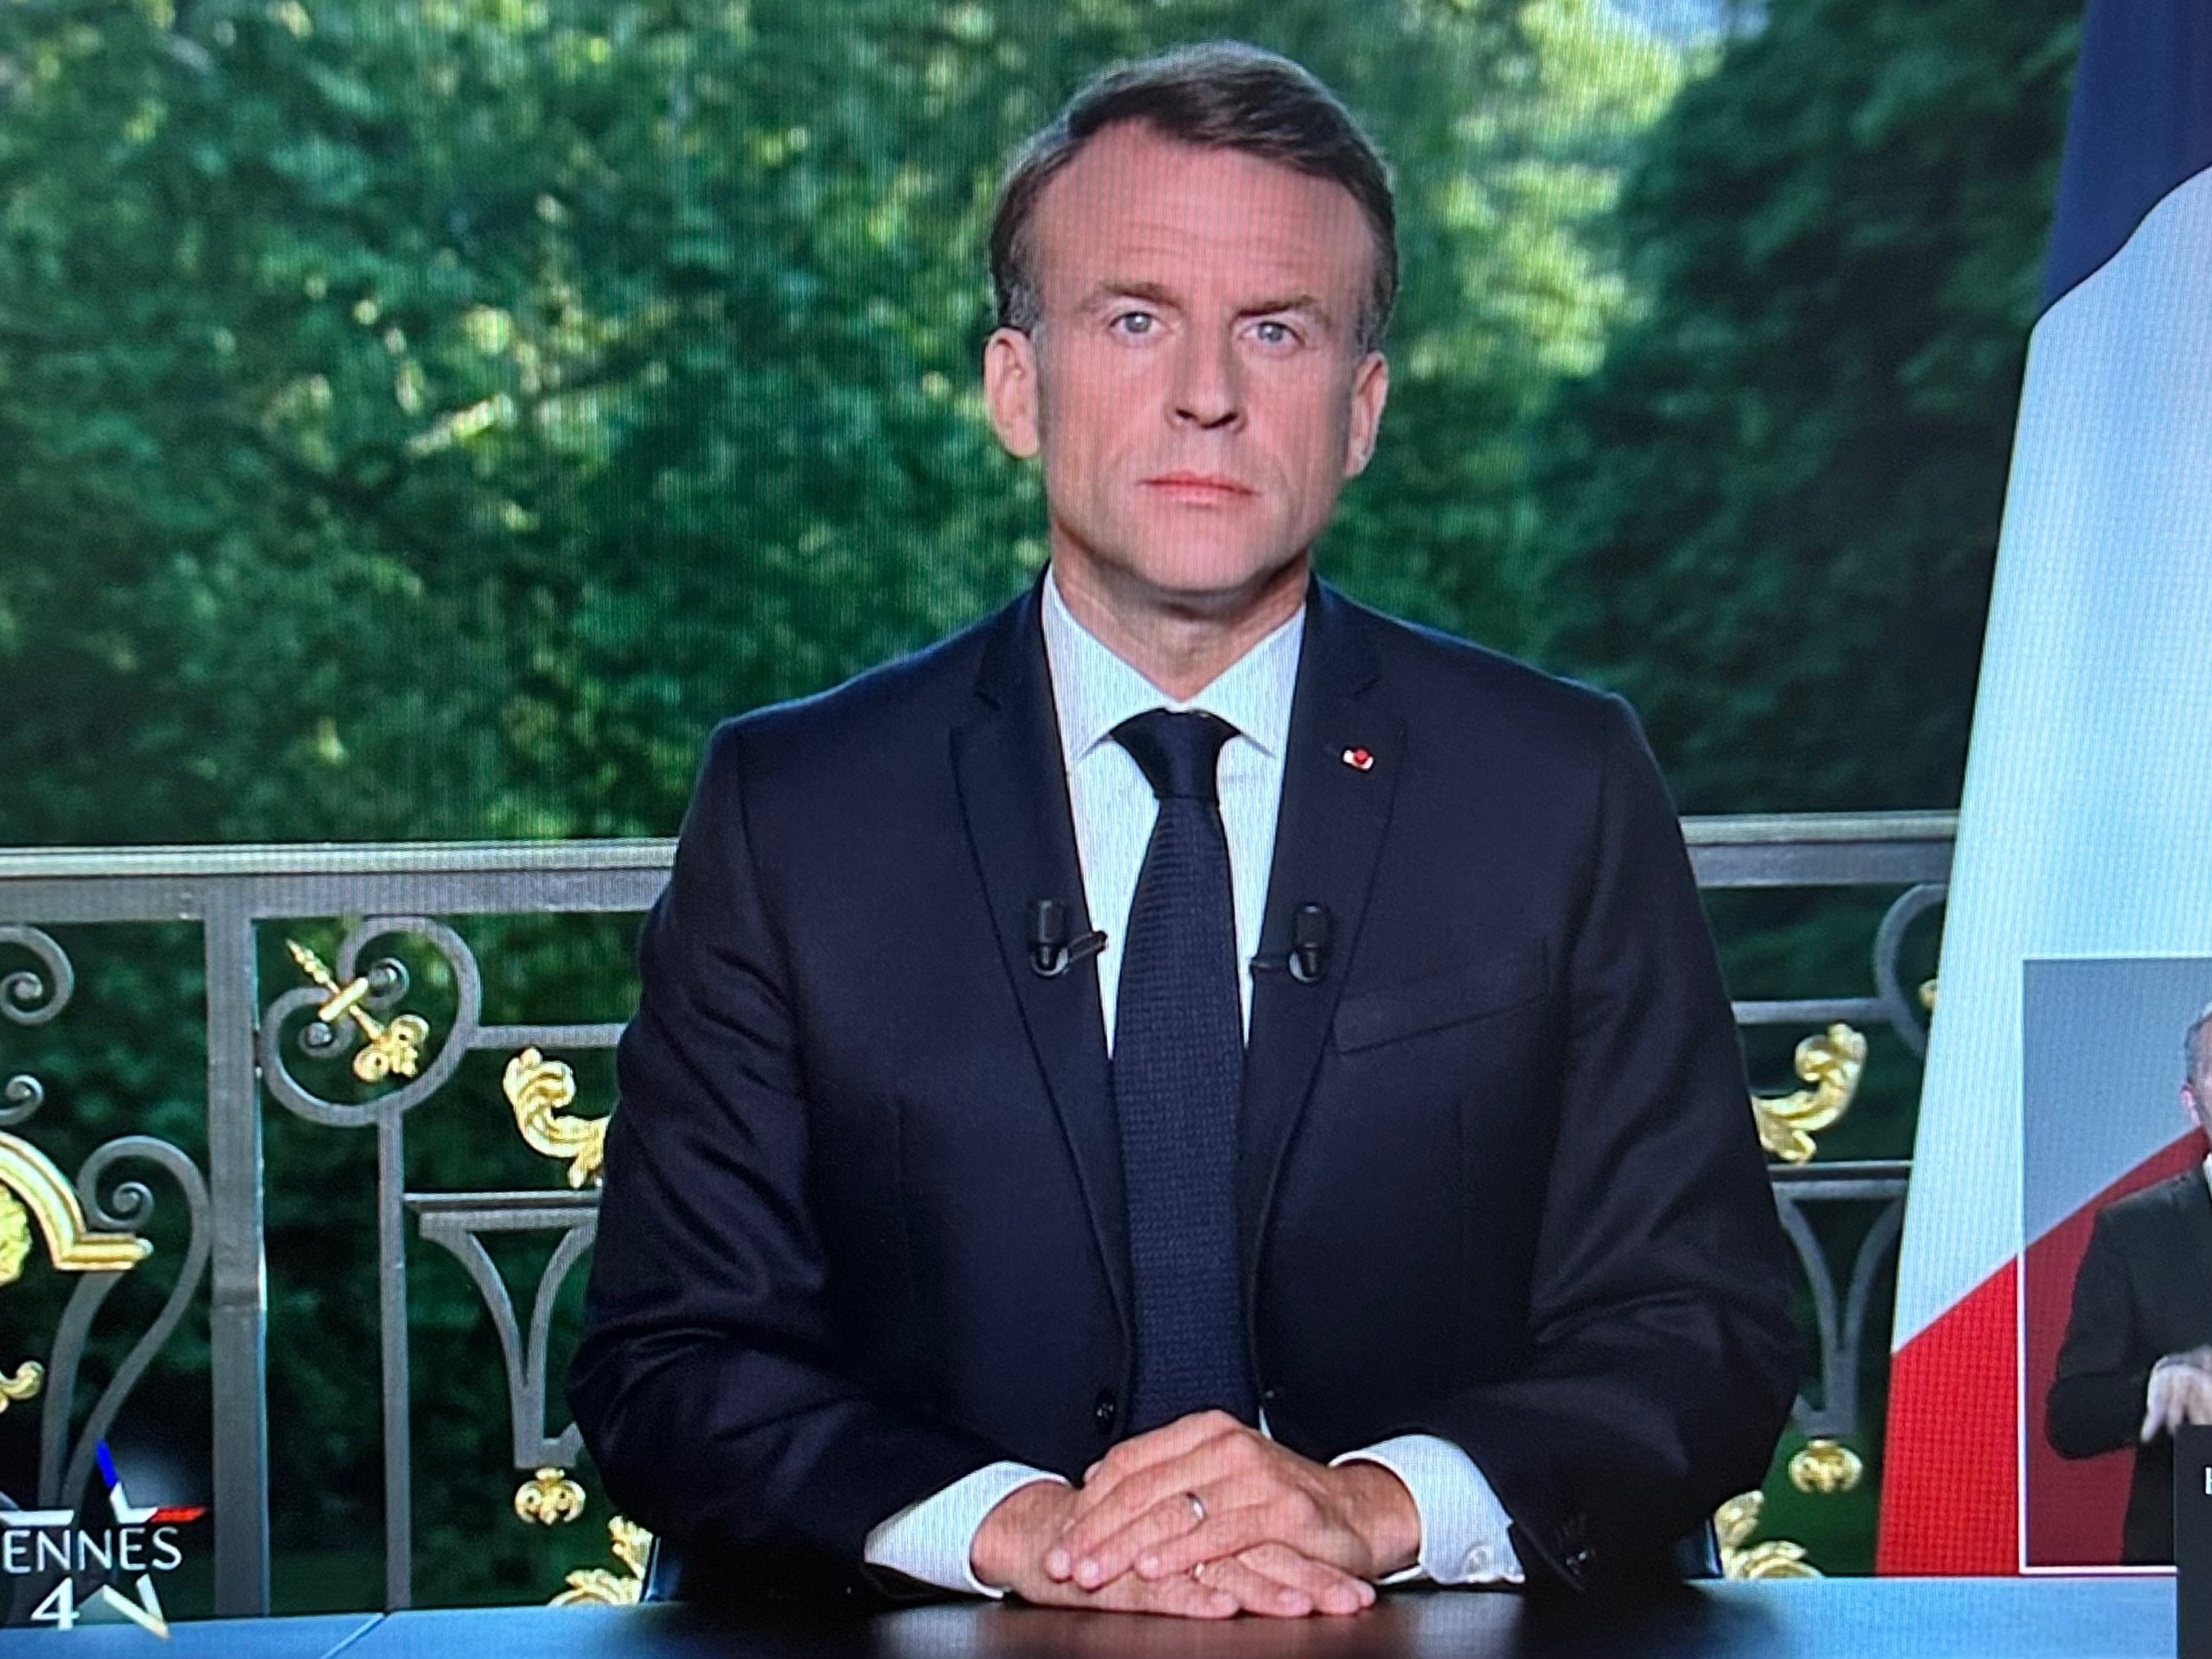 Dimanche 9 juin, le président de la République, Emmanuel Macron, annonce la dissolution de l’Assemblée nationale après les résultats des élections européennes. LP/Aurélie Audureau